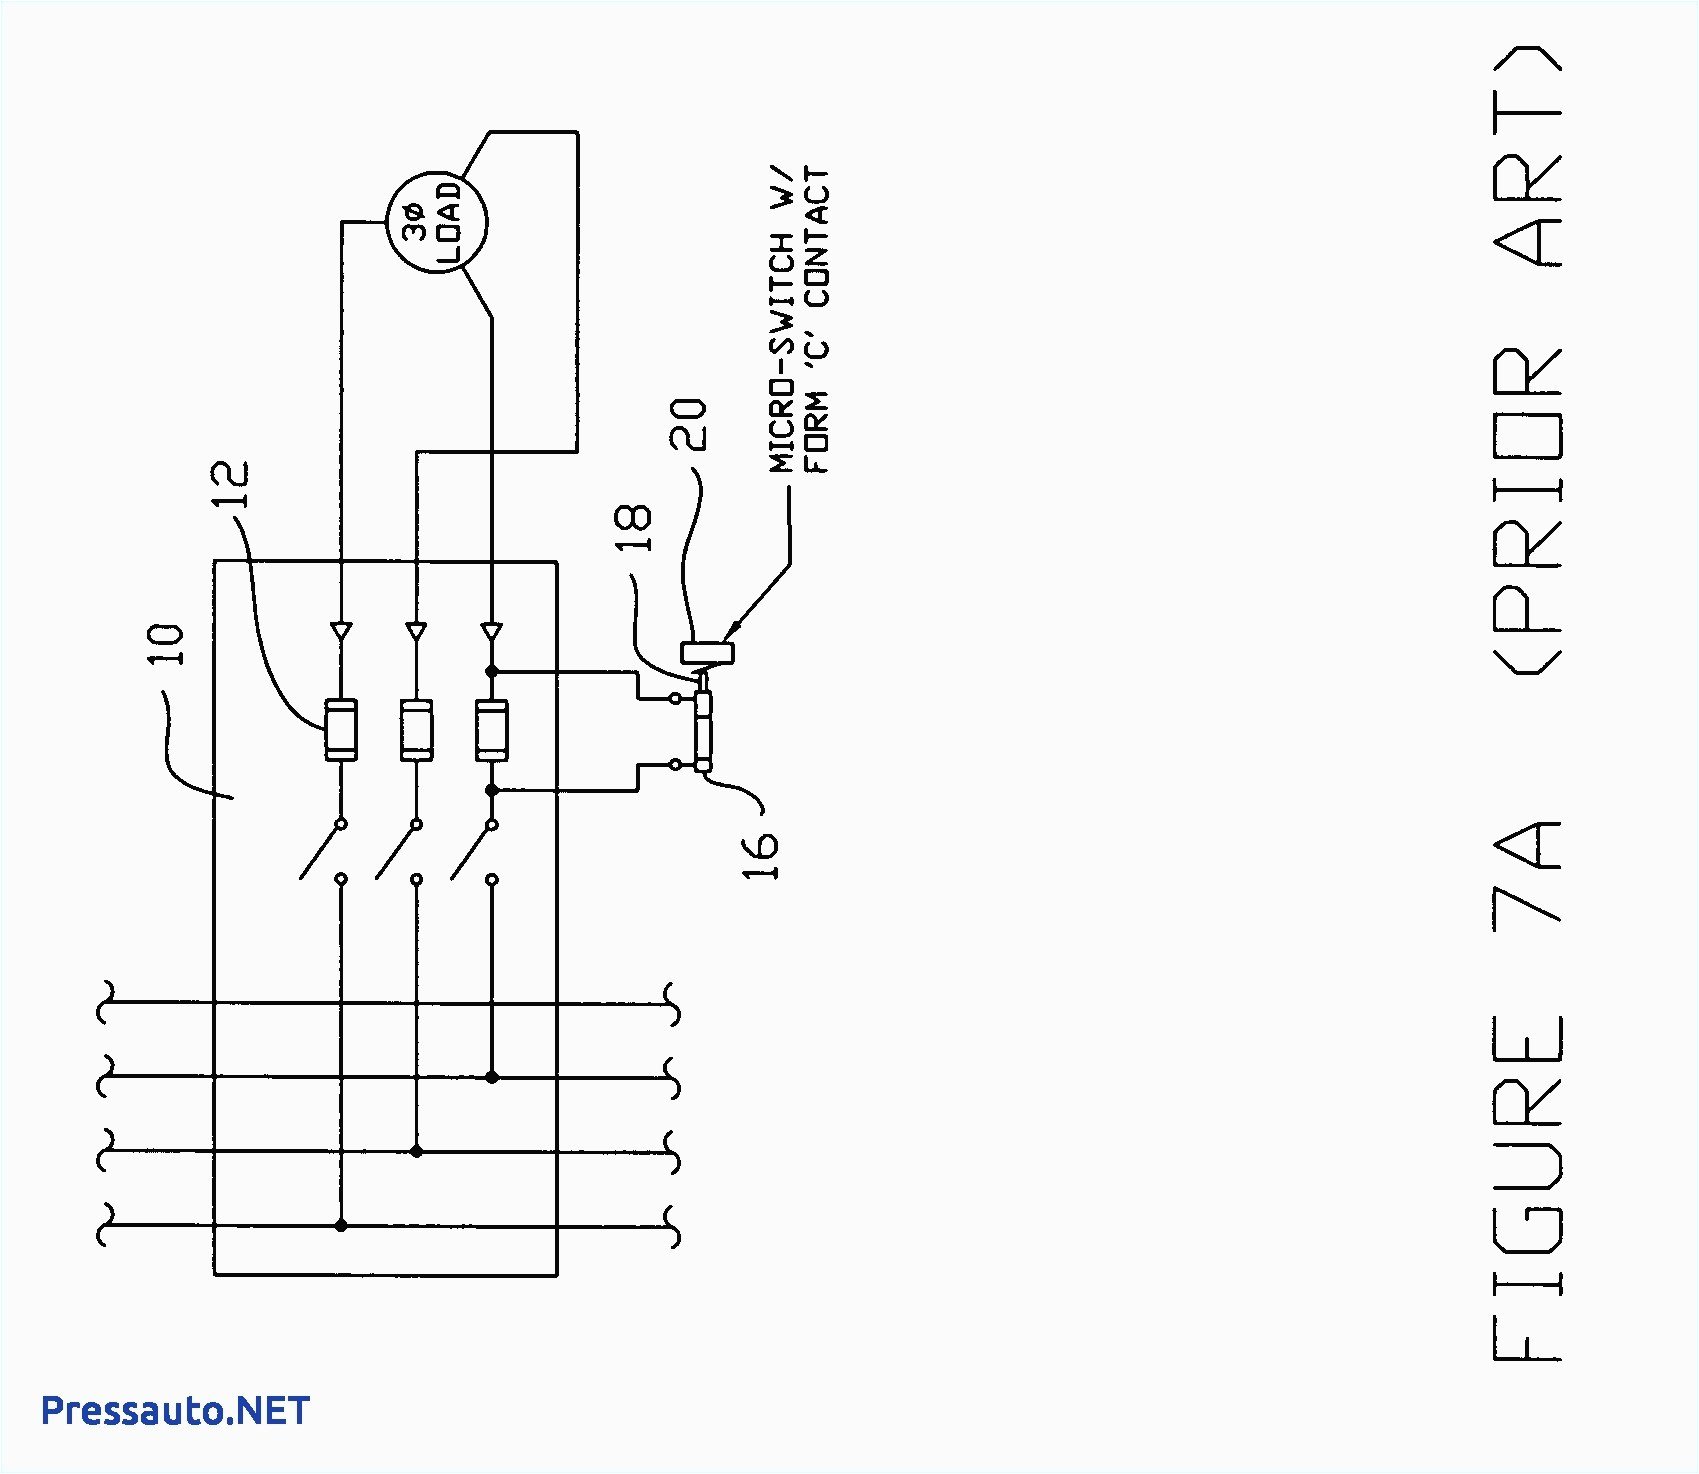 circuit breaker shunt trip wiring diagram